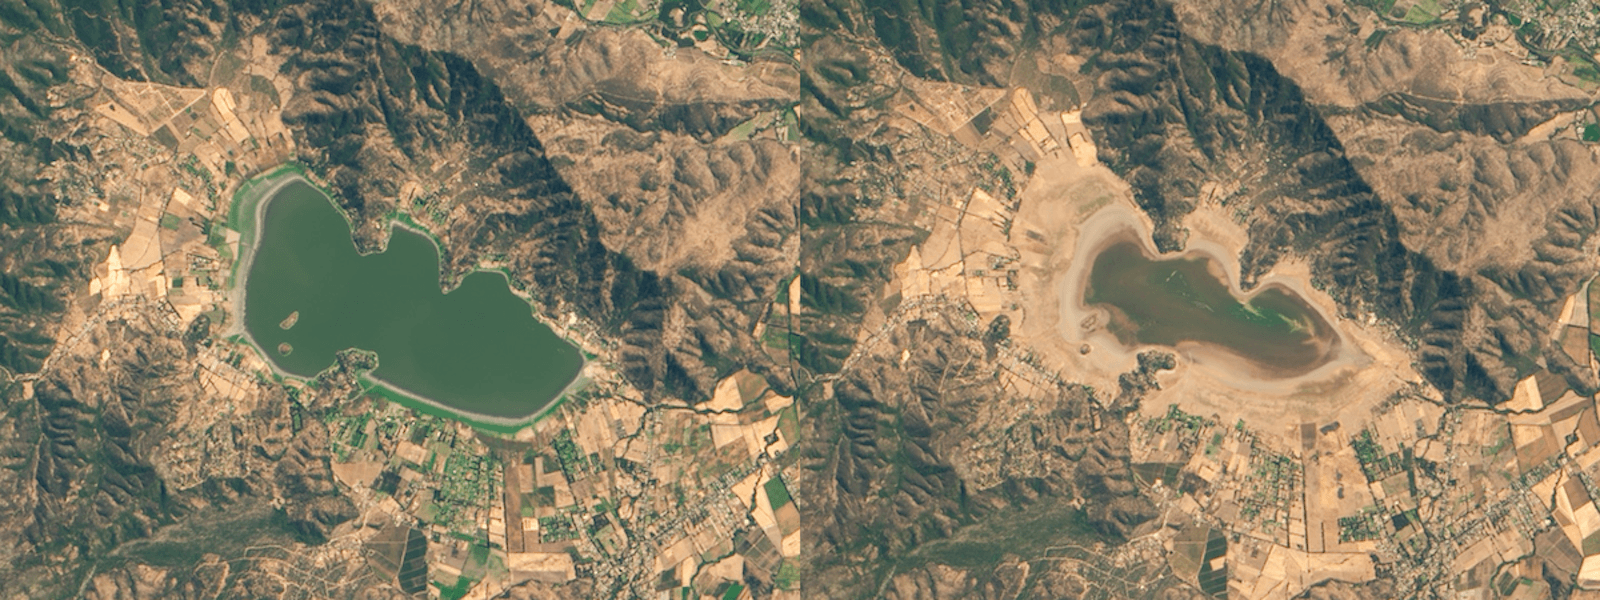 Il lago Aculeo, in Cile, nel 2014 e nel 2019